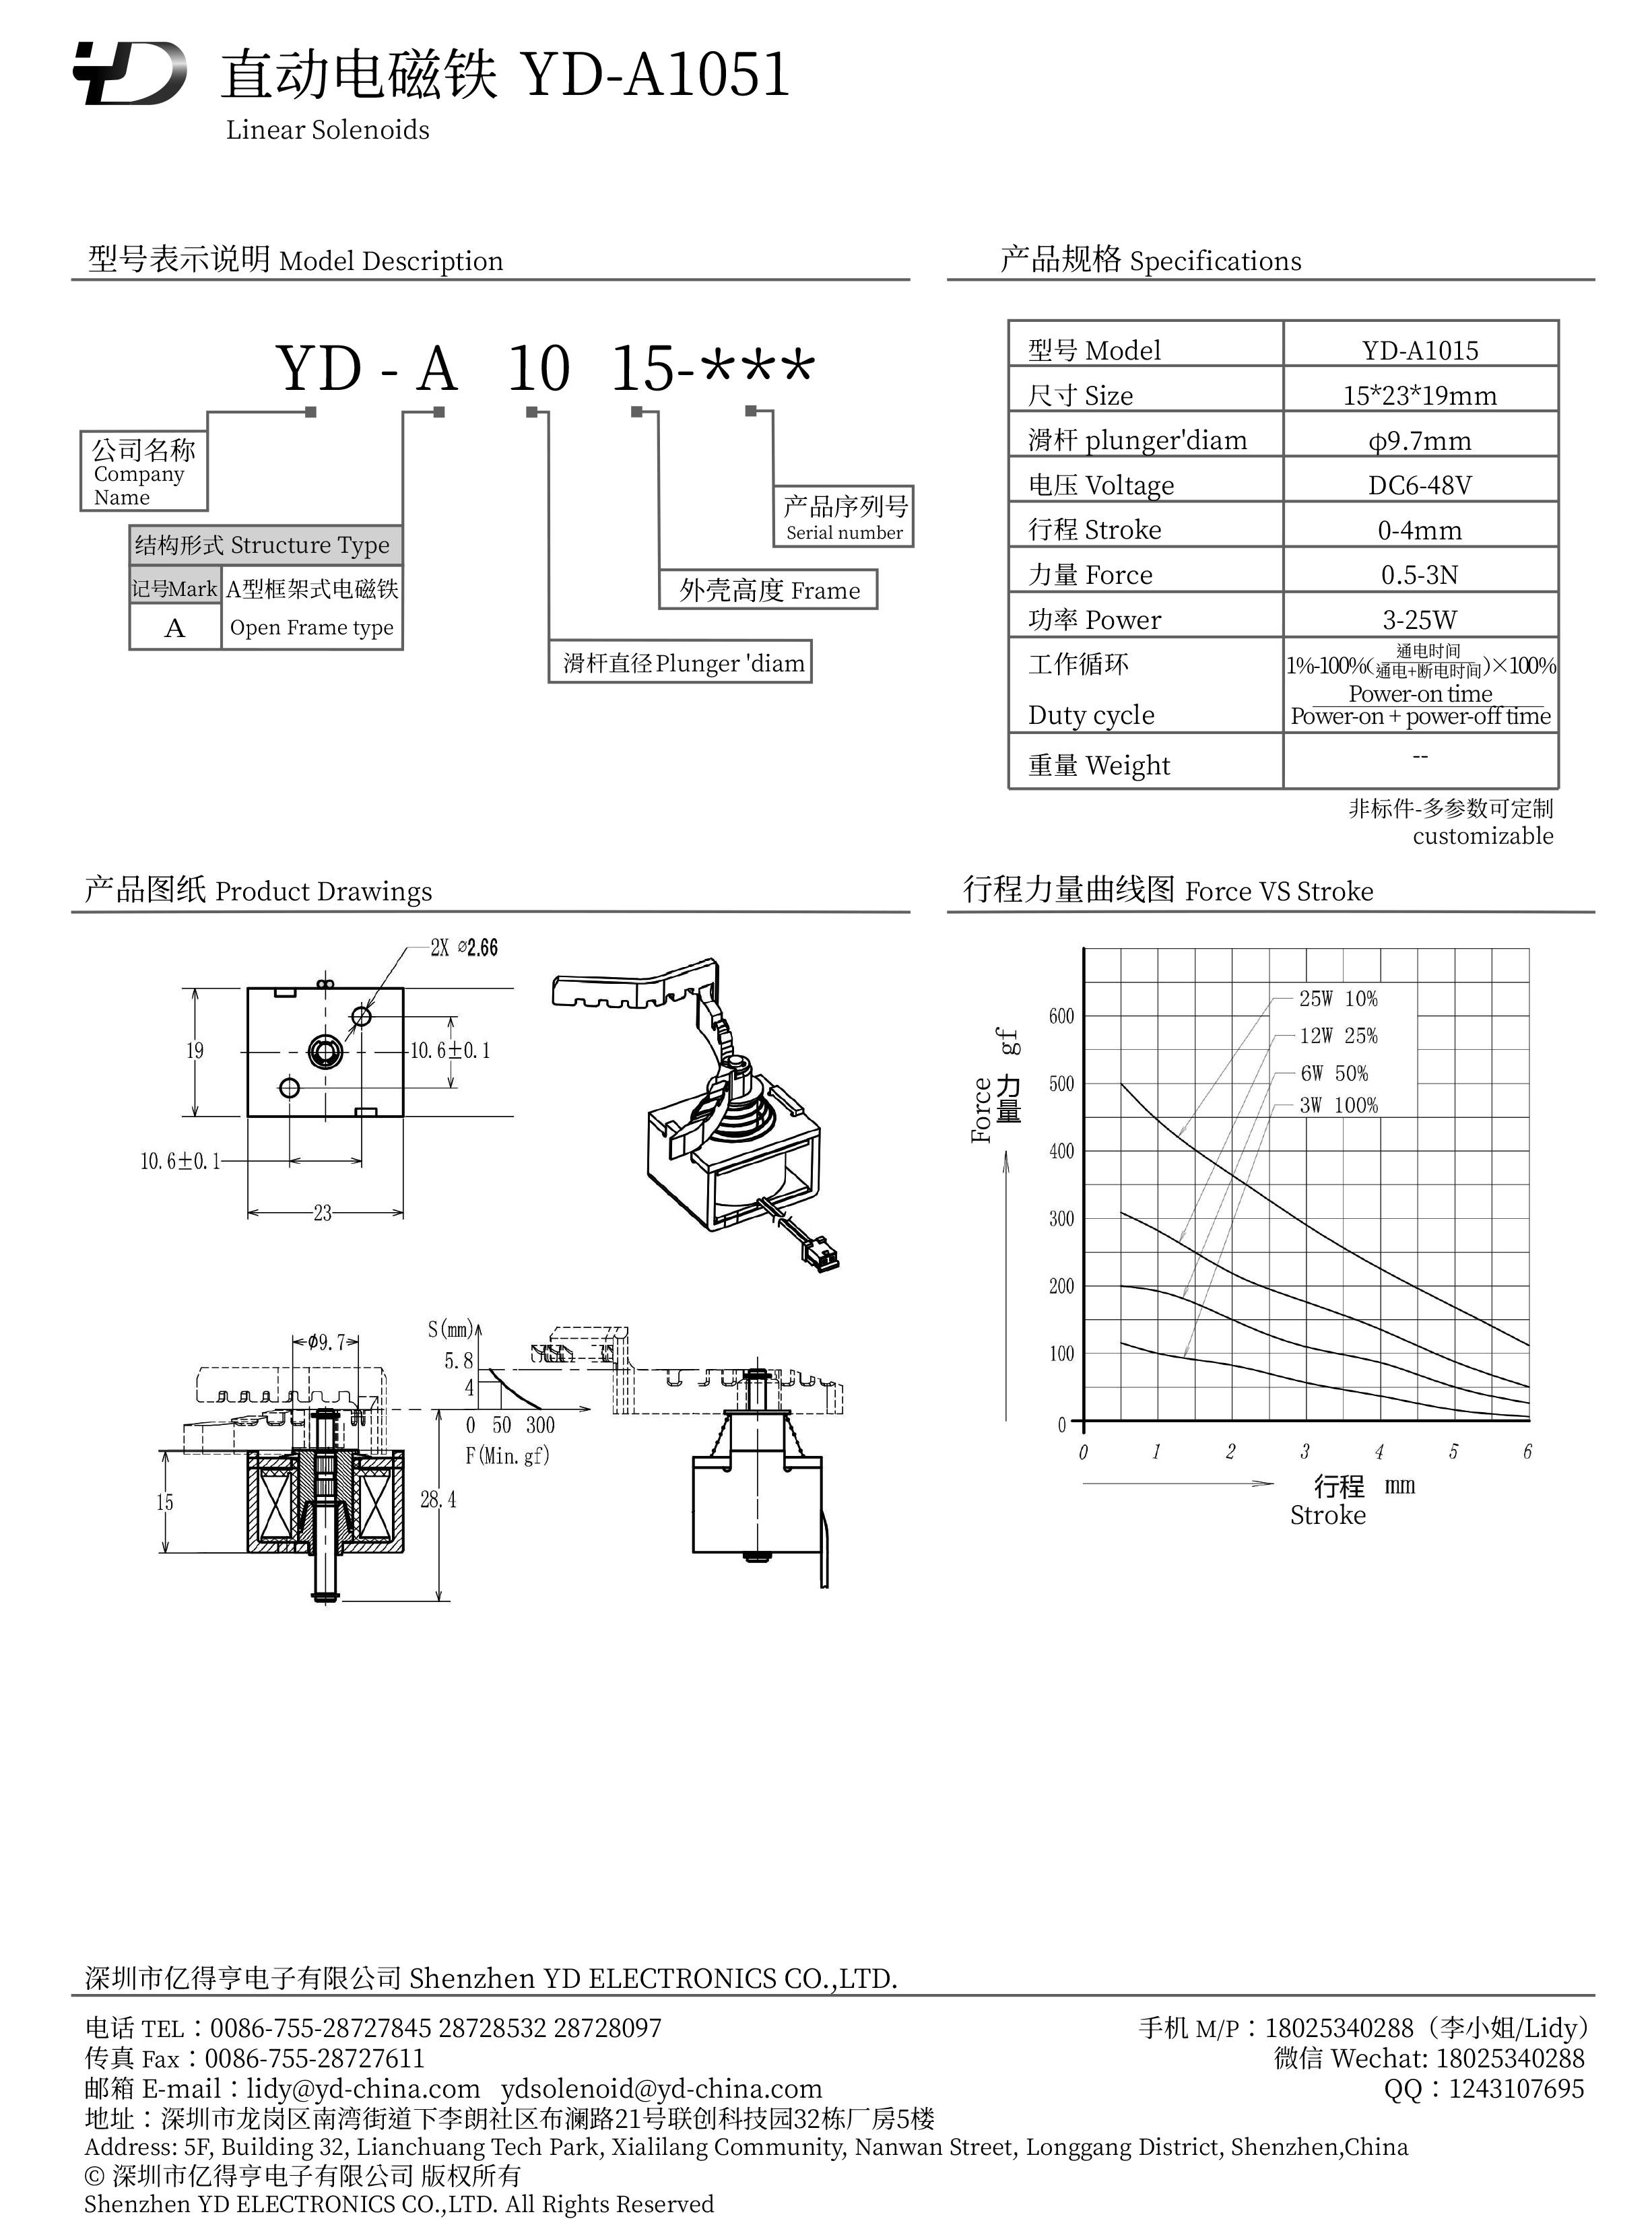 YD-A1015-PDF.jpg